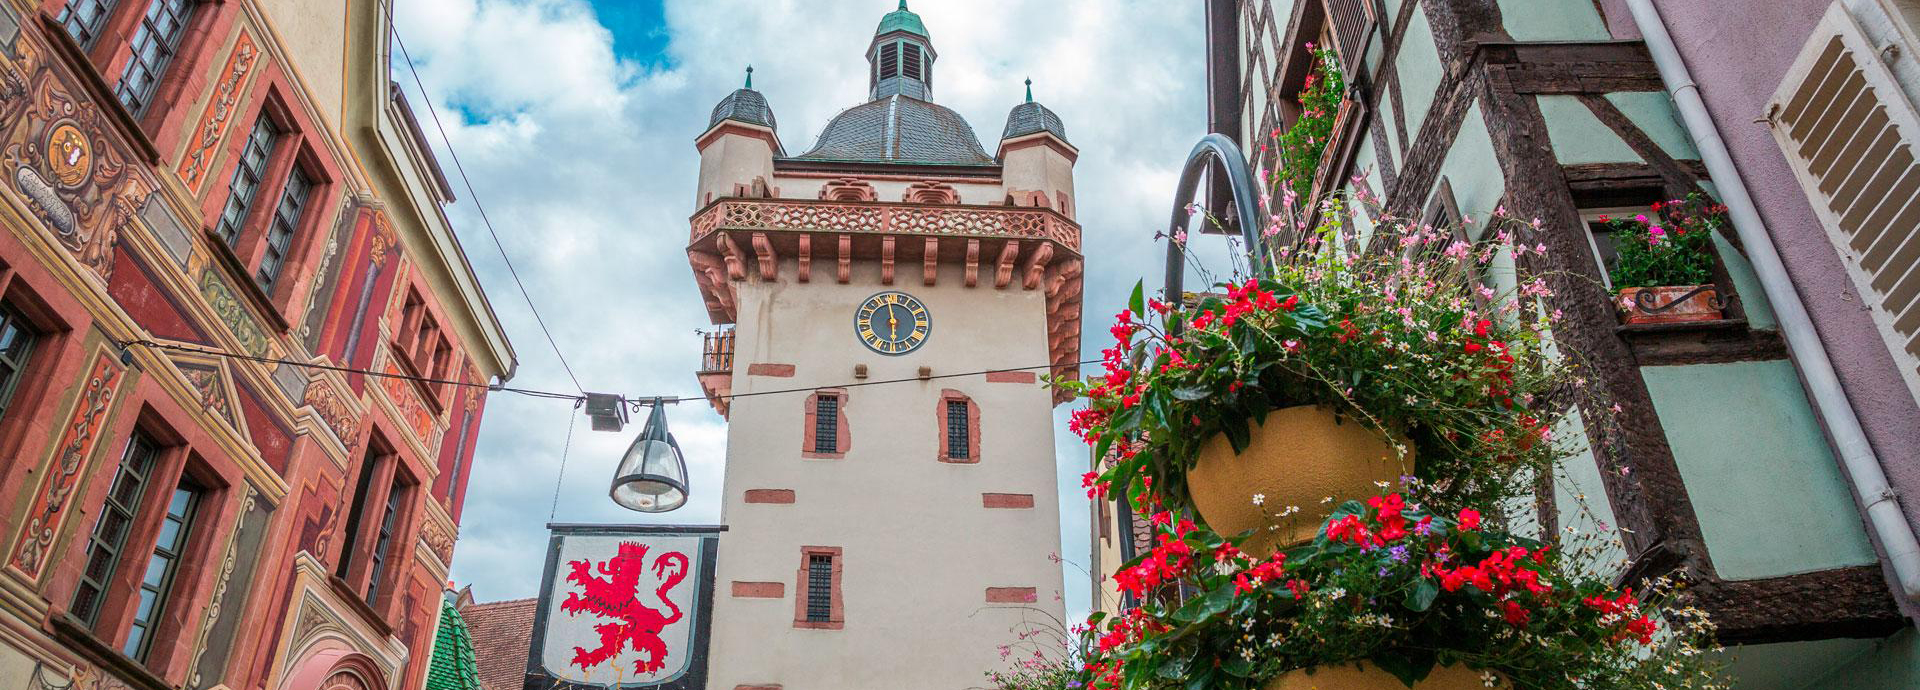 Sélestat est une ville idéalement située dans le Bas-Rhin, en Alsace